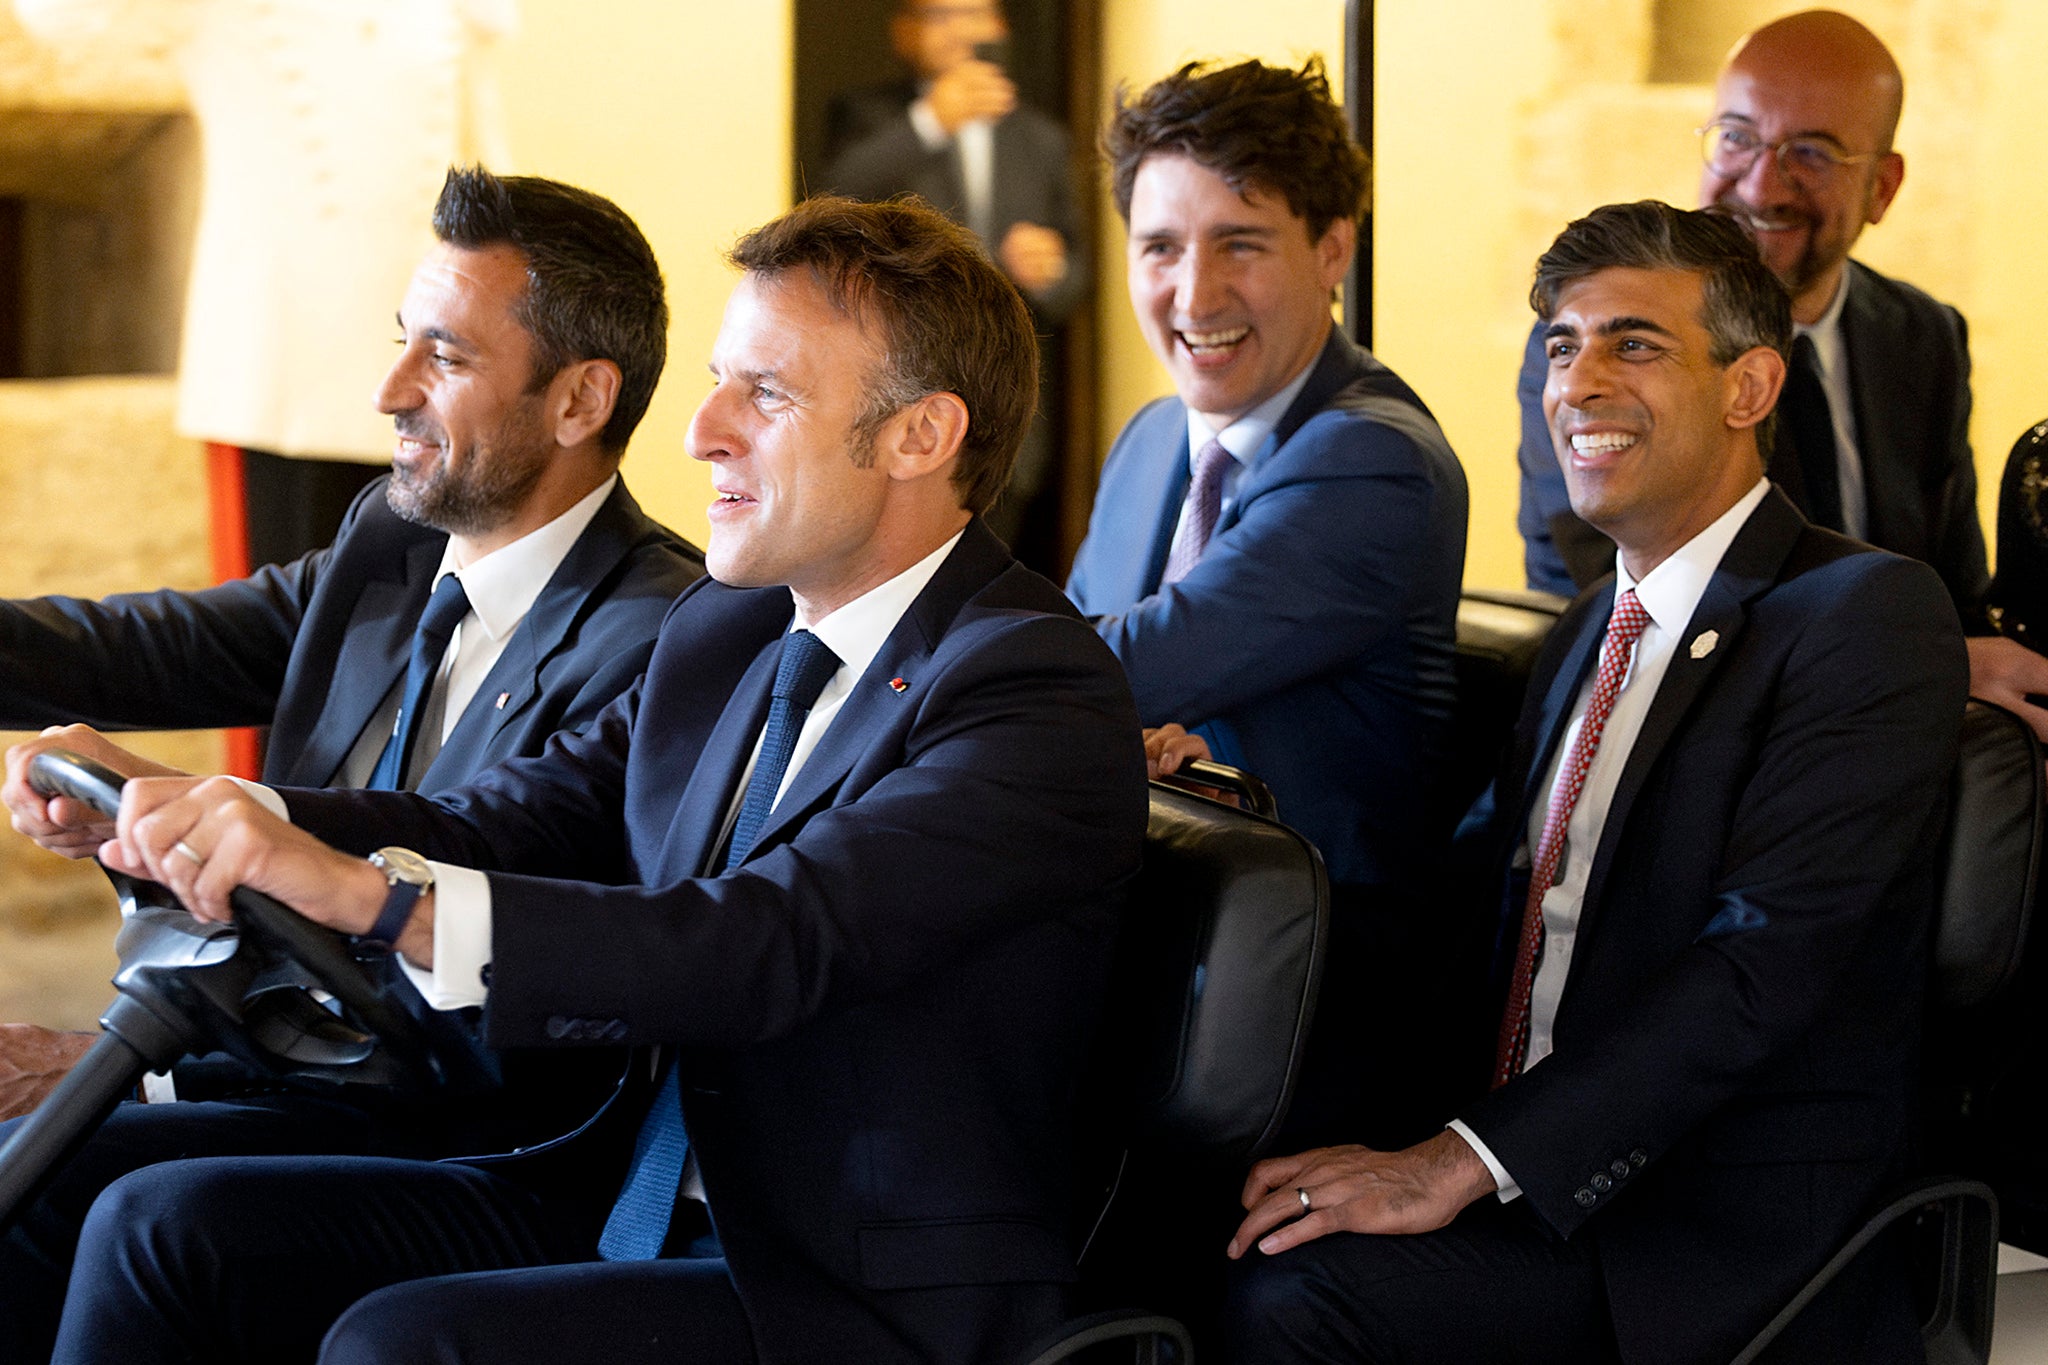 イタリアでのG7サミット中、フランスのエマニュエル・マクロン大統領は、英国のリシ・スナック首相、欧州理事会のシャルル・ミシェル議長、カナダのジャスティン・トルドー首相とともにゴルフカーを運転